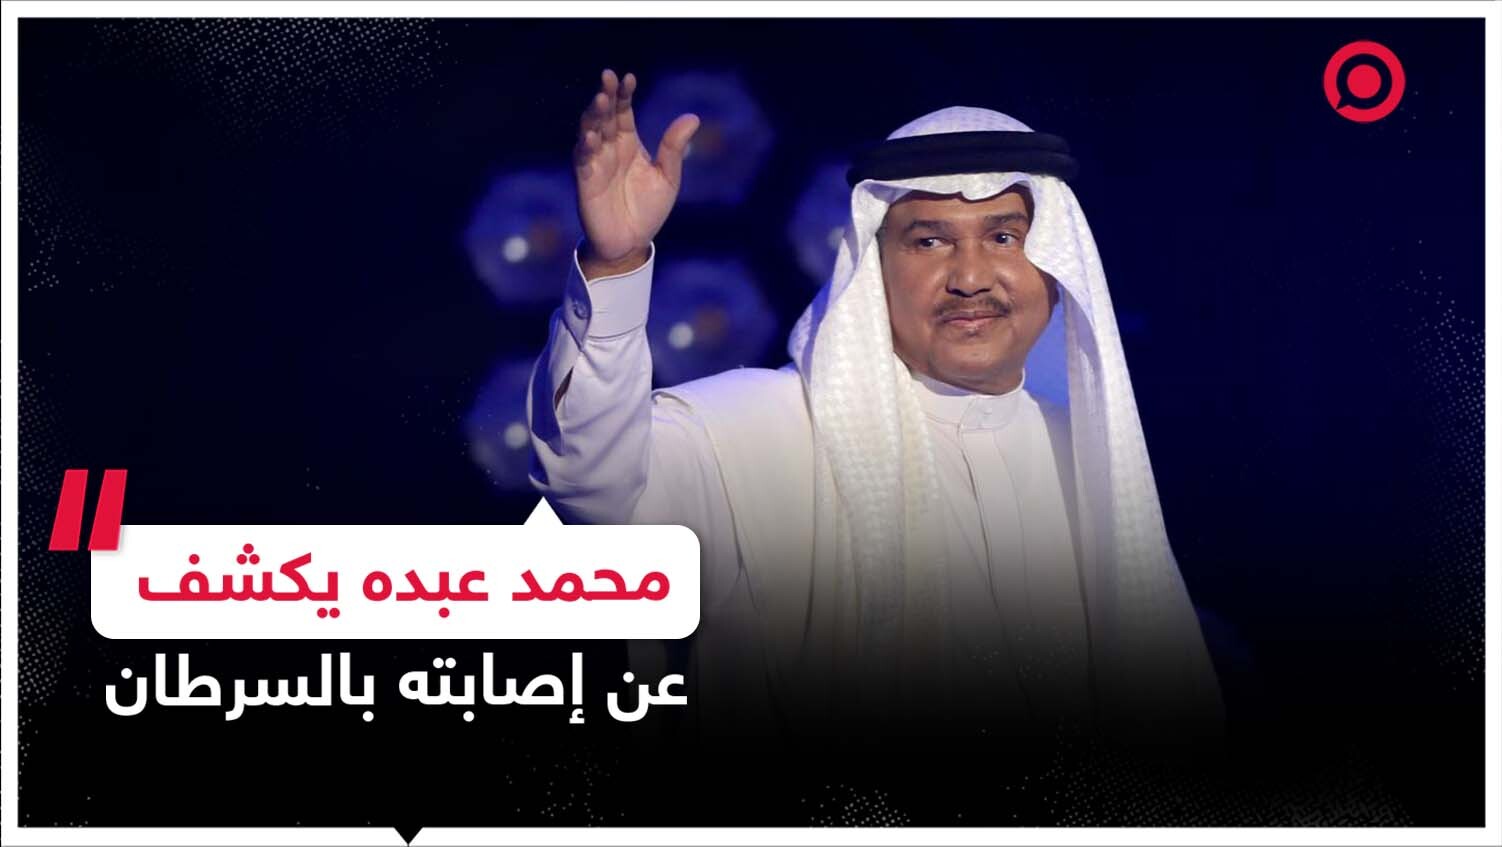 الفنان السعودي محمد عبده يكشف عن إصابته بالسرطان